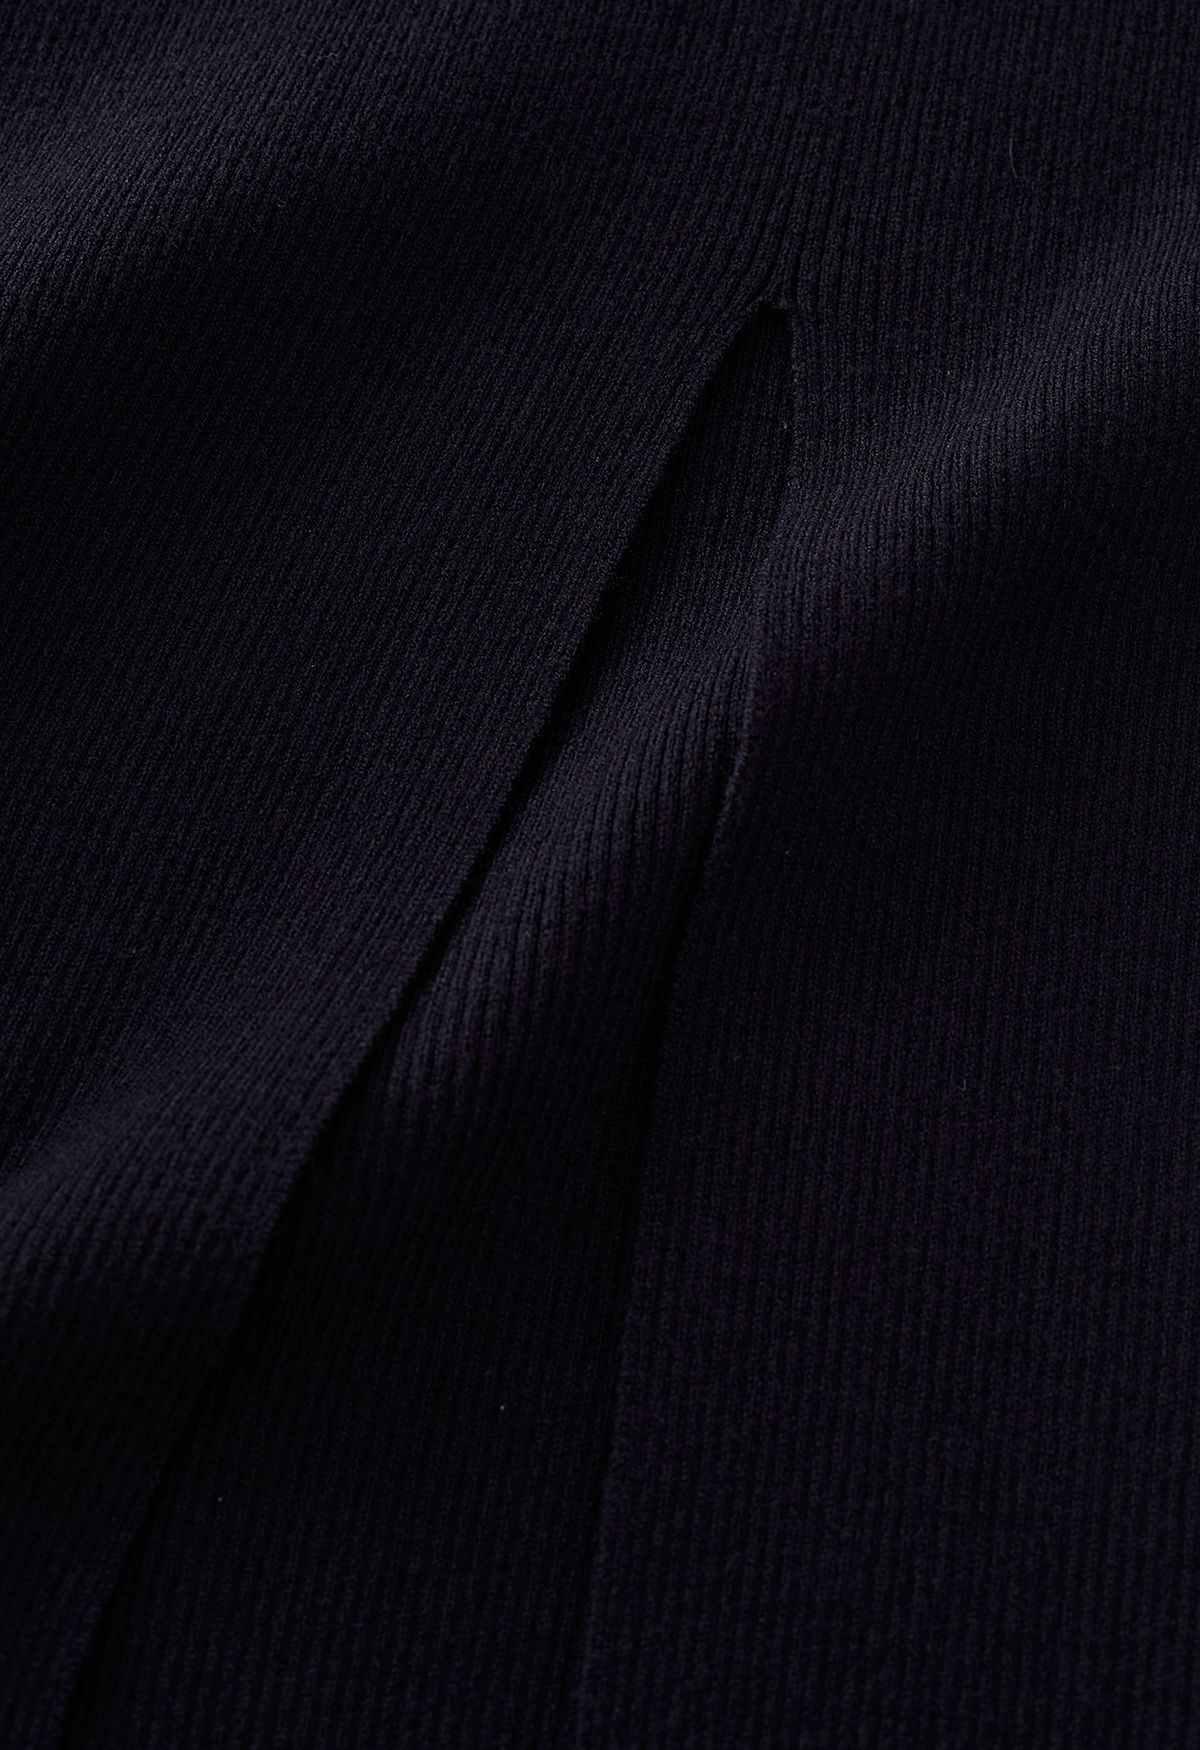 Conjunto de top corto de punto y falda larga con abertura alta en negro